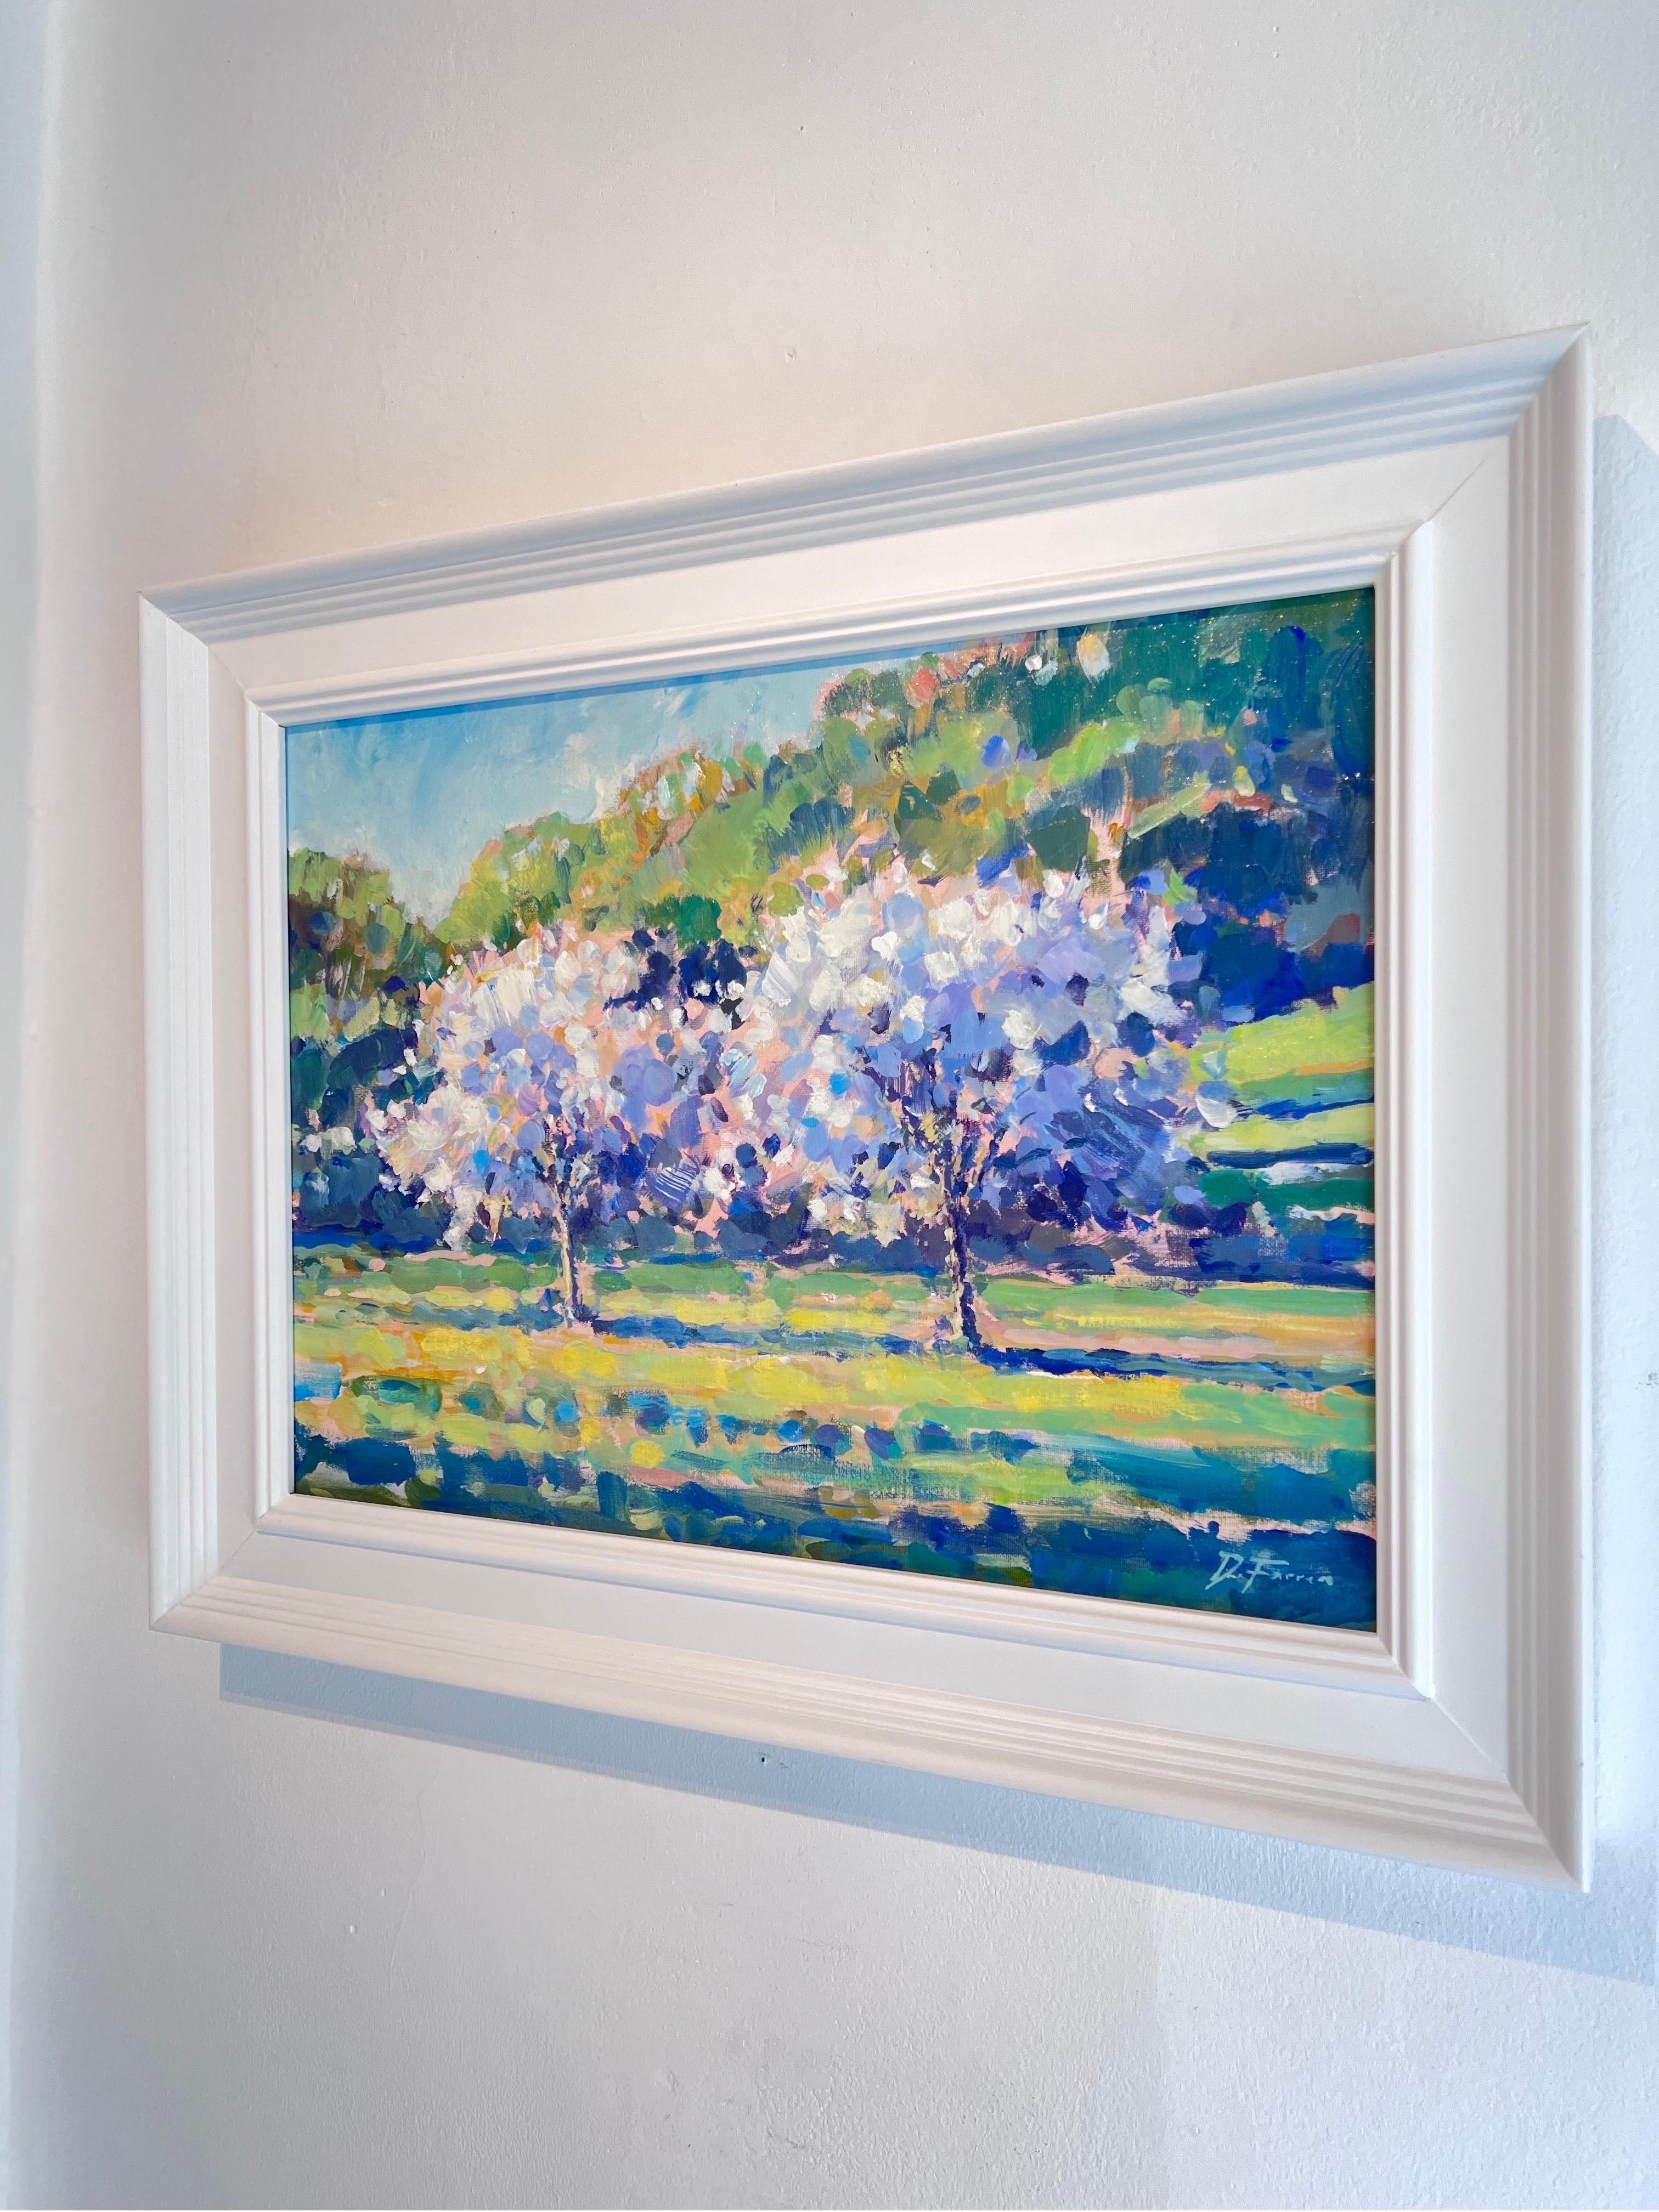 Apfelbäume in Bloom-Impressionismus im Bloom-Stil  Landschaftsmalerei - Zeitgenössische Kunst (Grau), Still-Life Painting, von David Farren